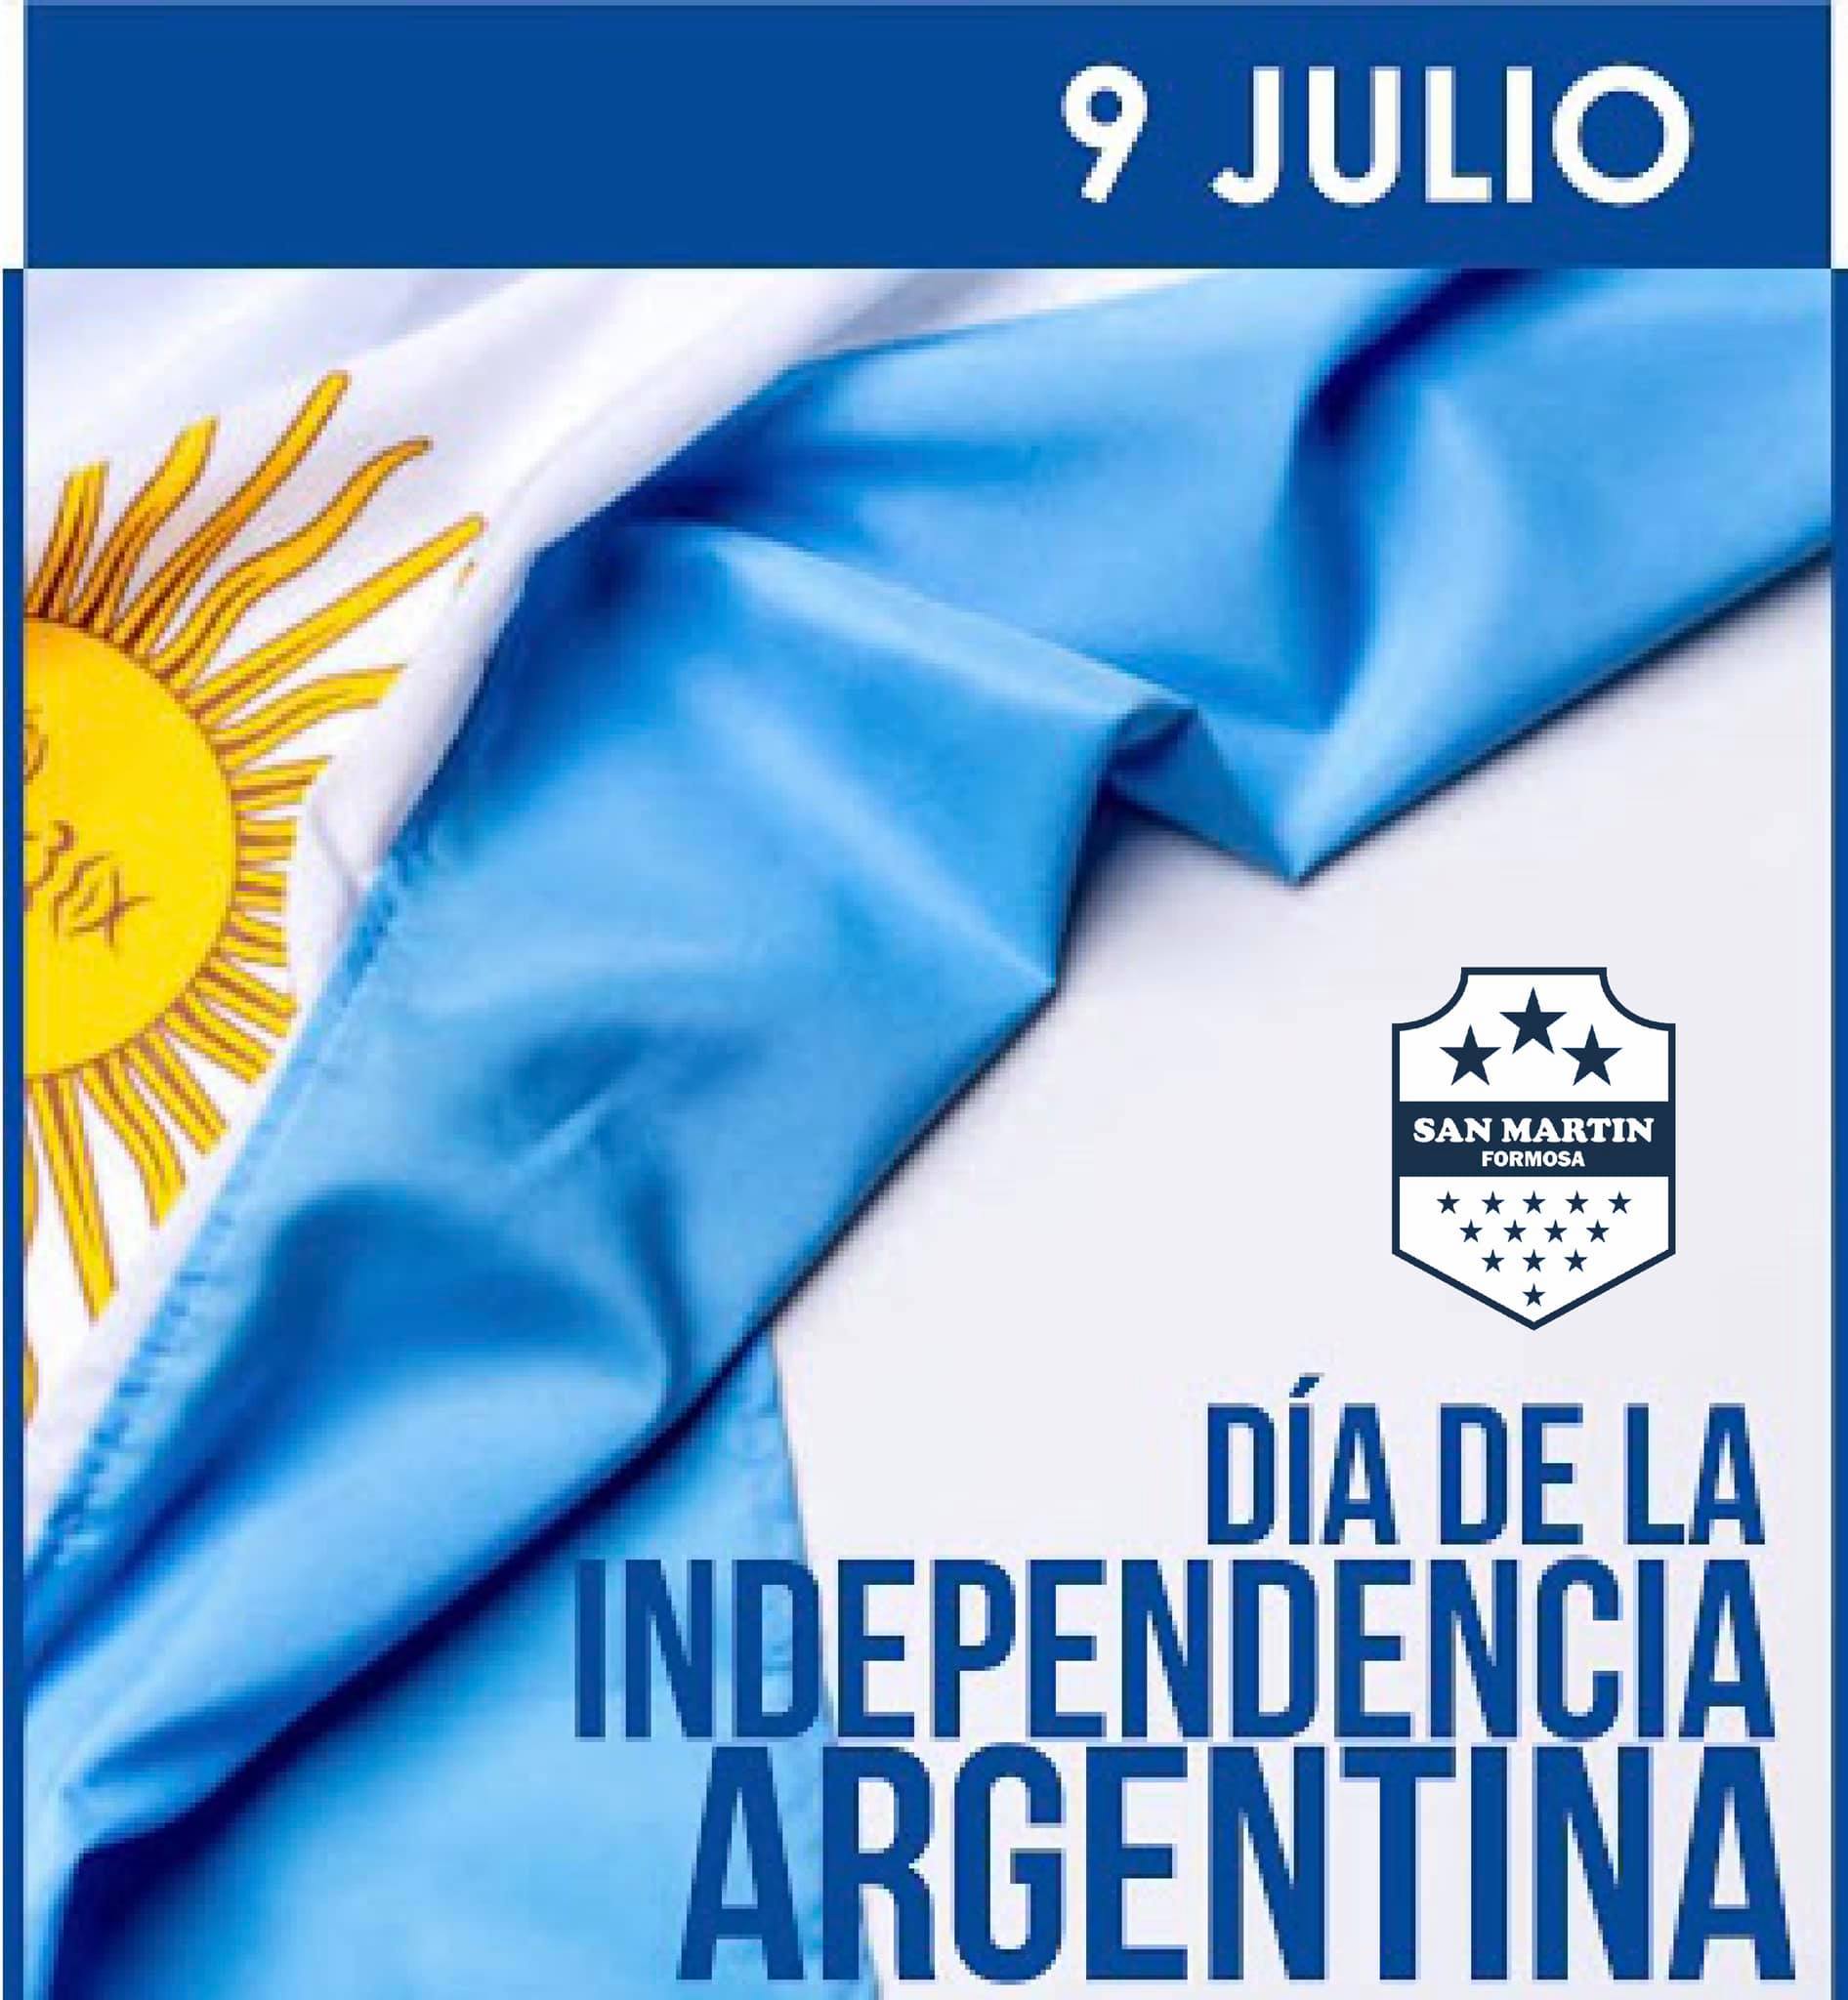 9 de Julio “Día de la Independencia Argentina”